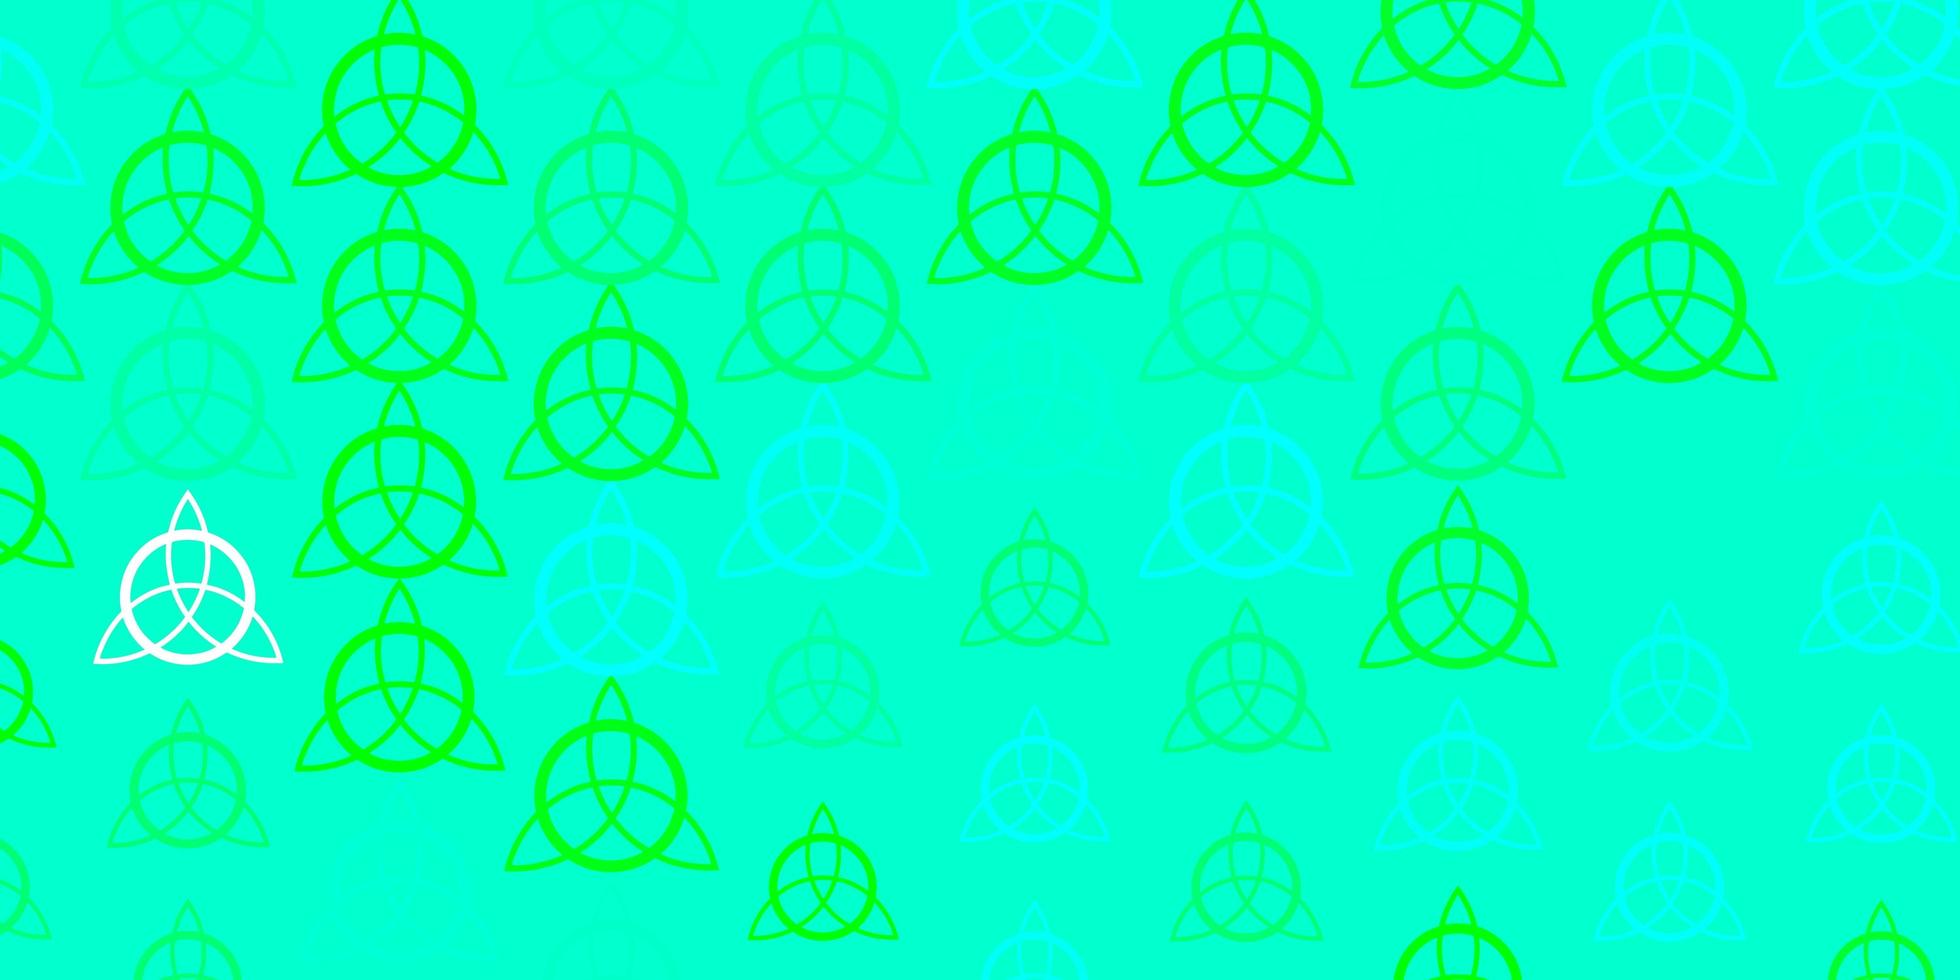 sfondo vettoriale verde chiaro con simboli misteriosi.